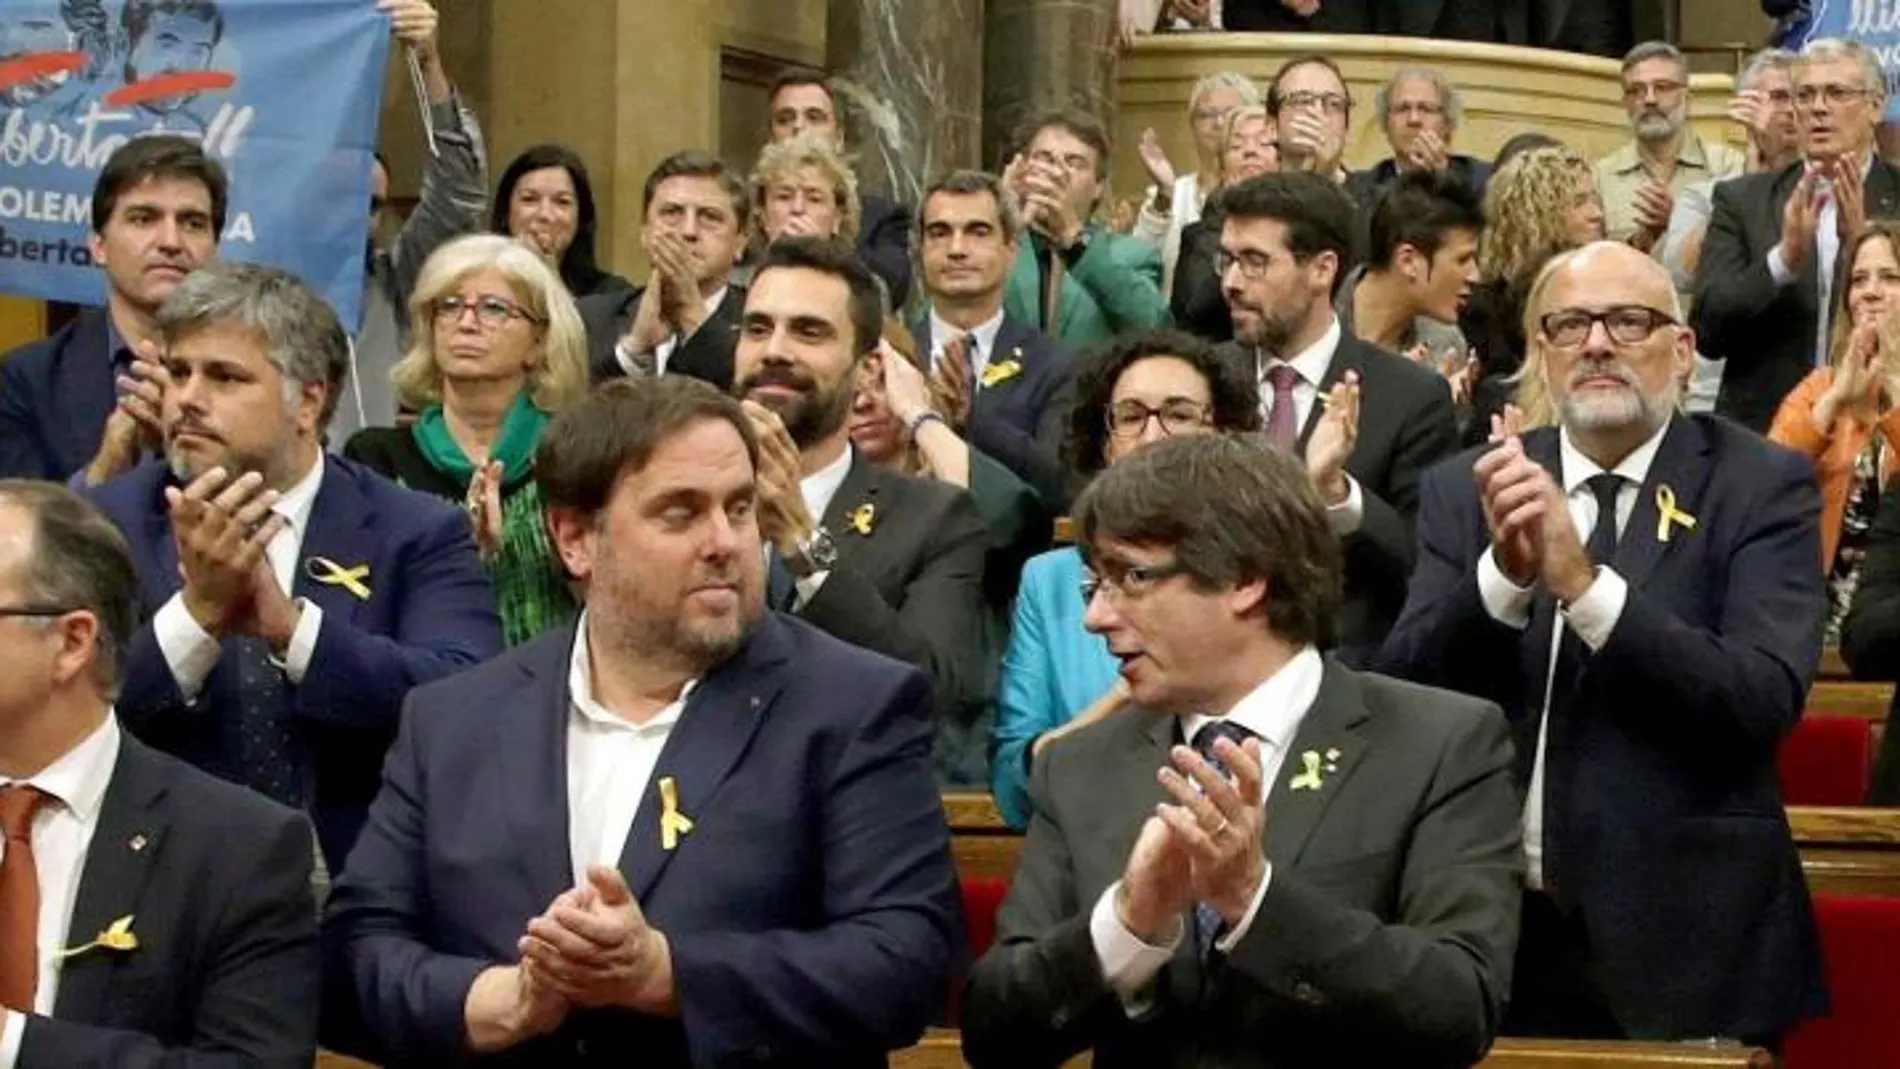 Carles Puigdemont y Oriol Junqueras junto a los diputados de JxSí y la CUP y sin los diputados del PSC, PPC y Ciudadanos, aplauden tras aprobarse en el pleno del Parlament, la declaración de independencia. EFE/ Alberto Estévez